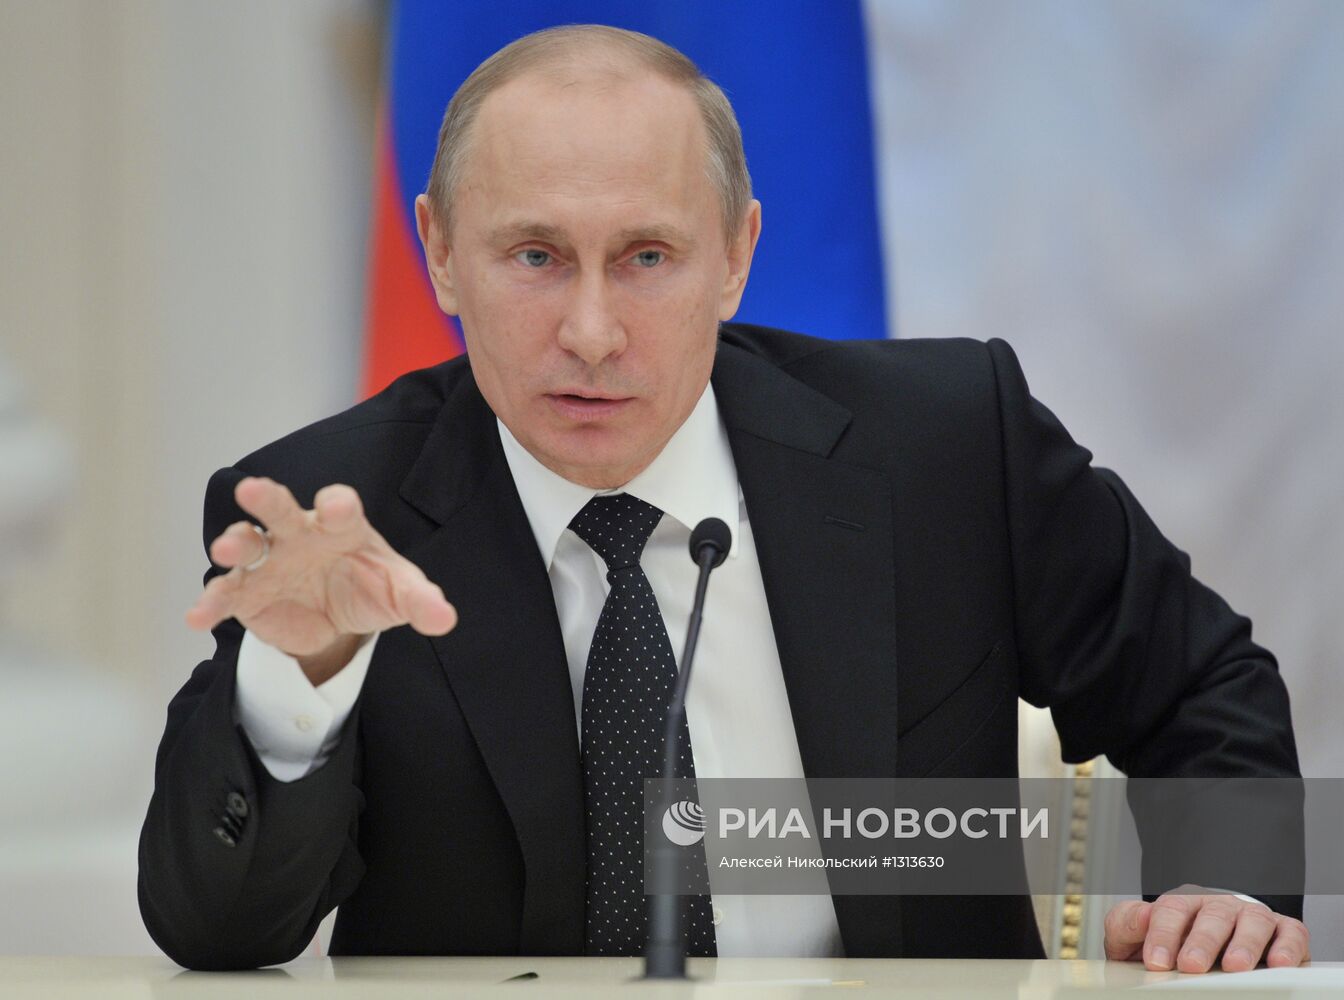 В.Путин на встрече с членами Совета законодателей РФ